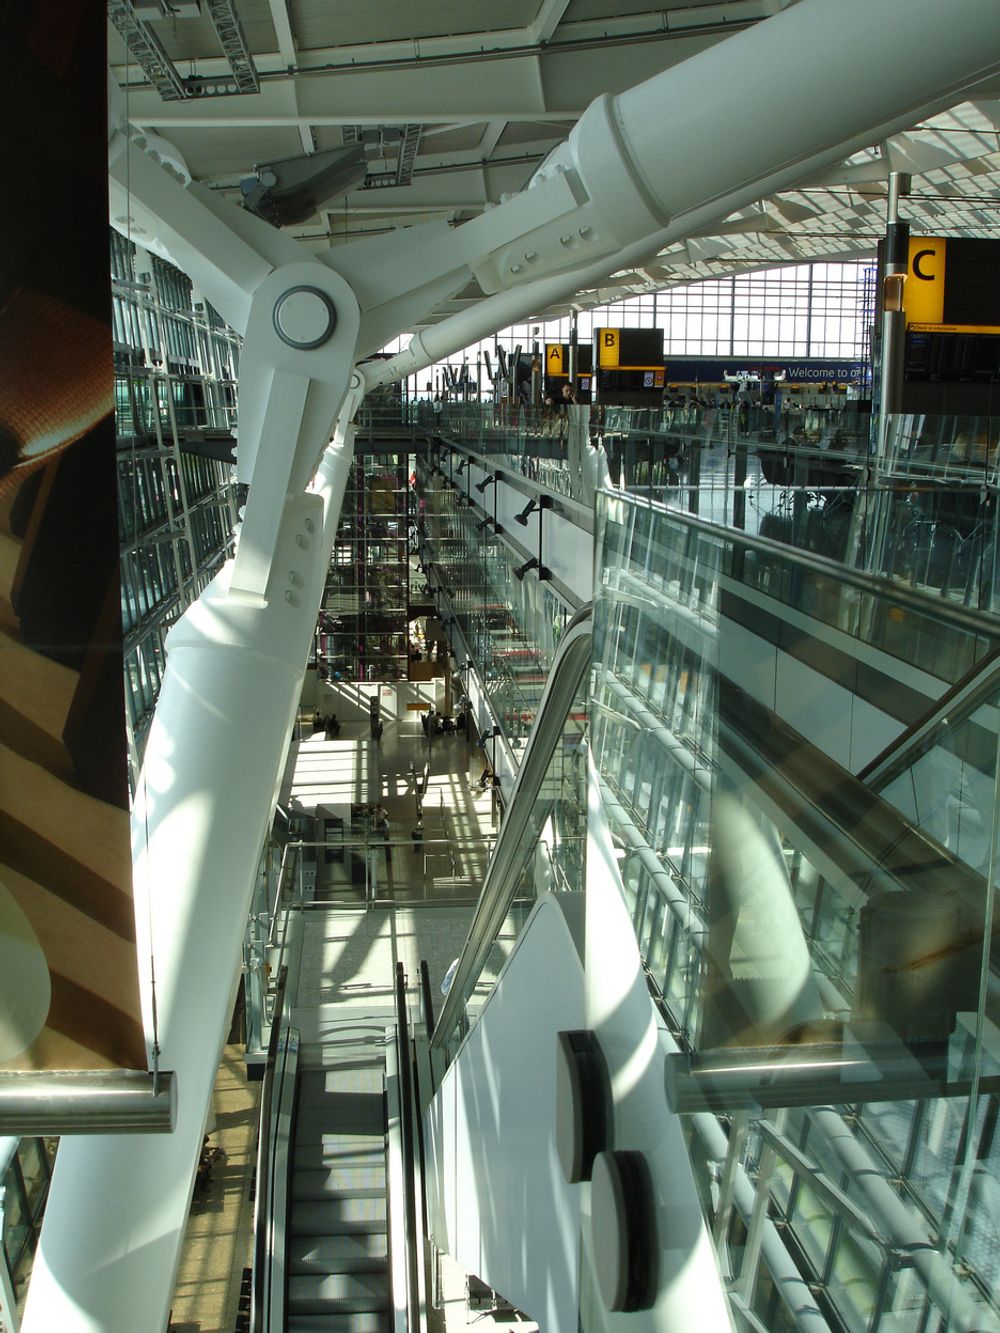 Heathrows nye terminal 5.